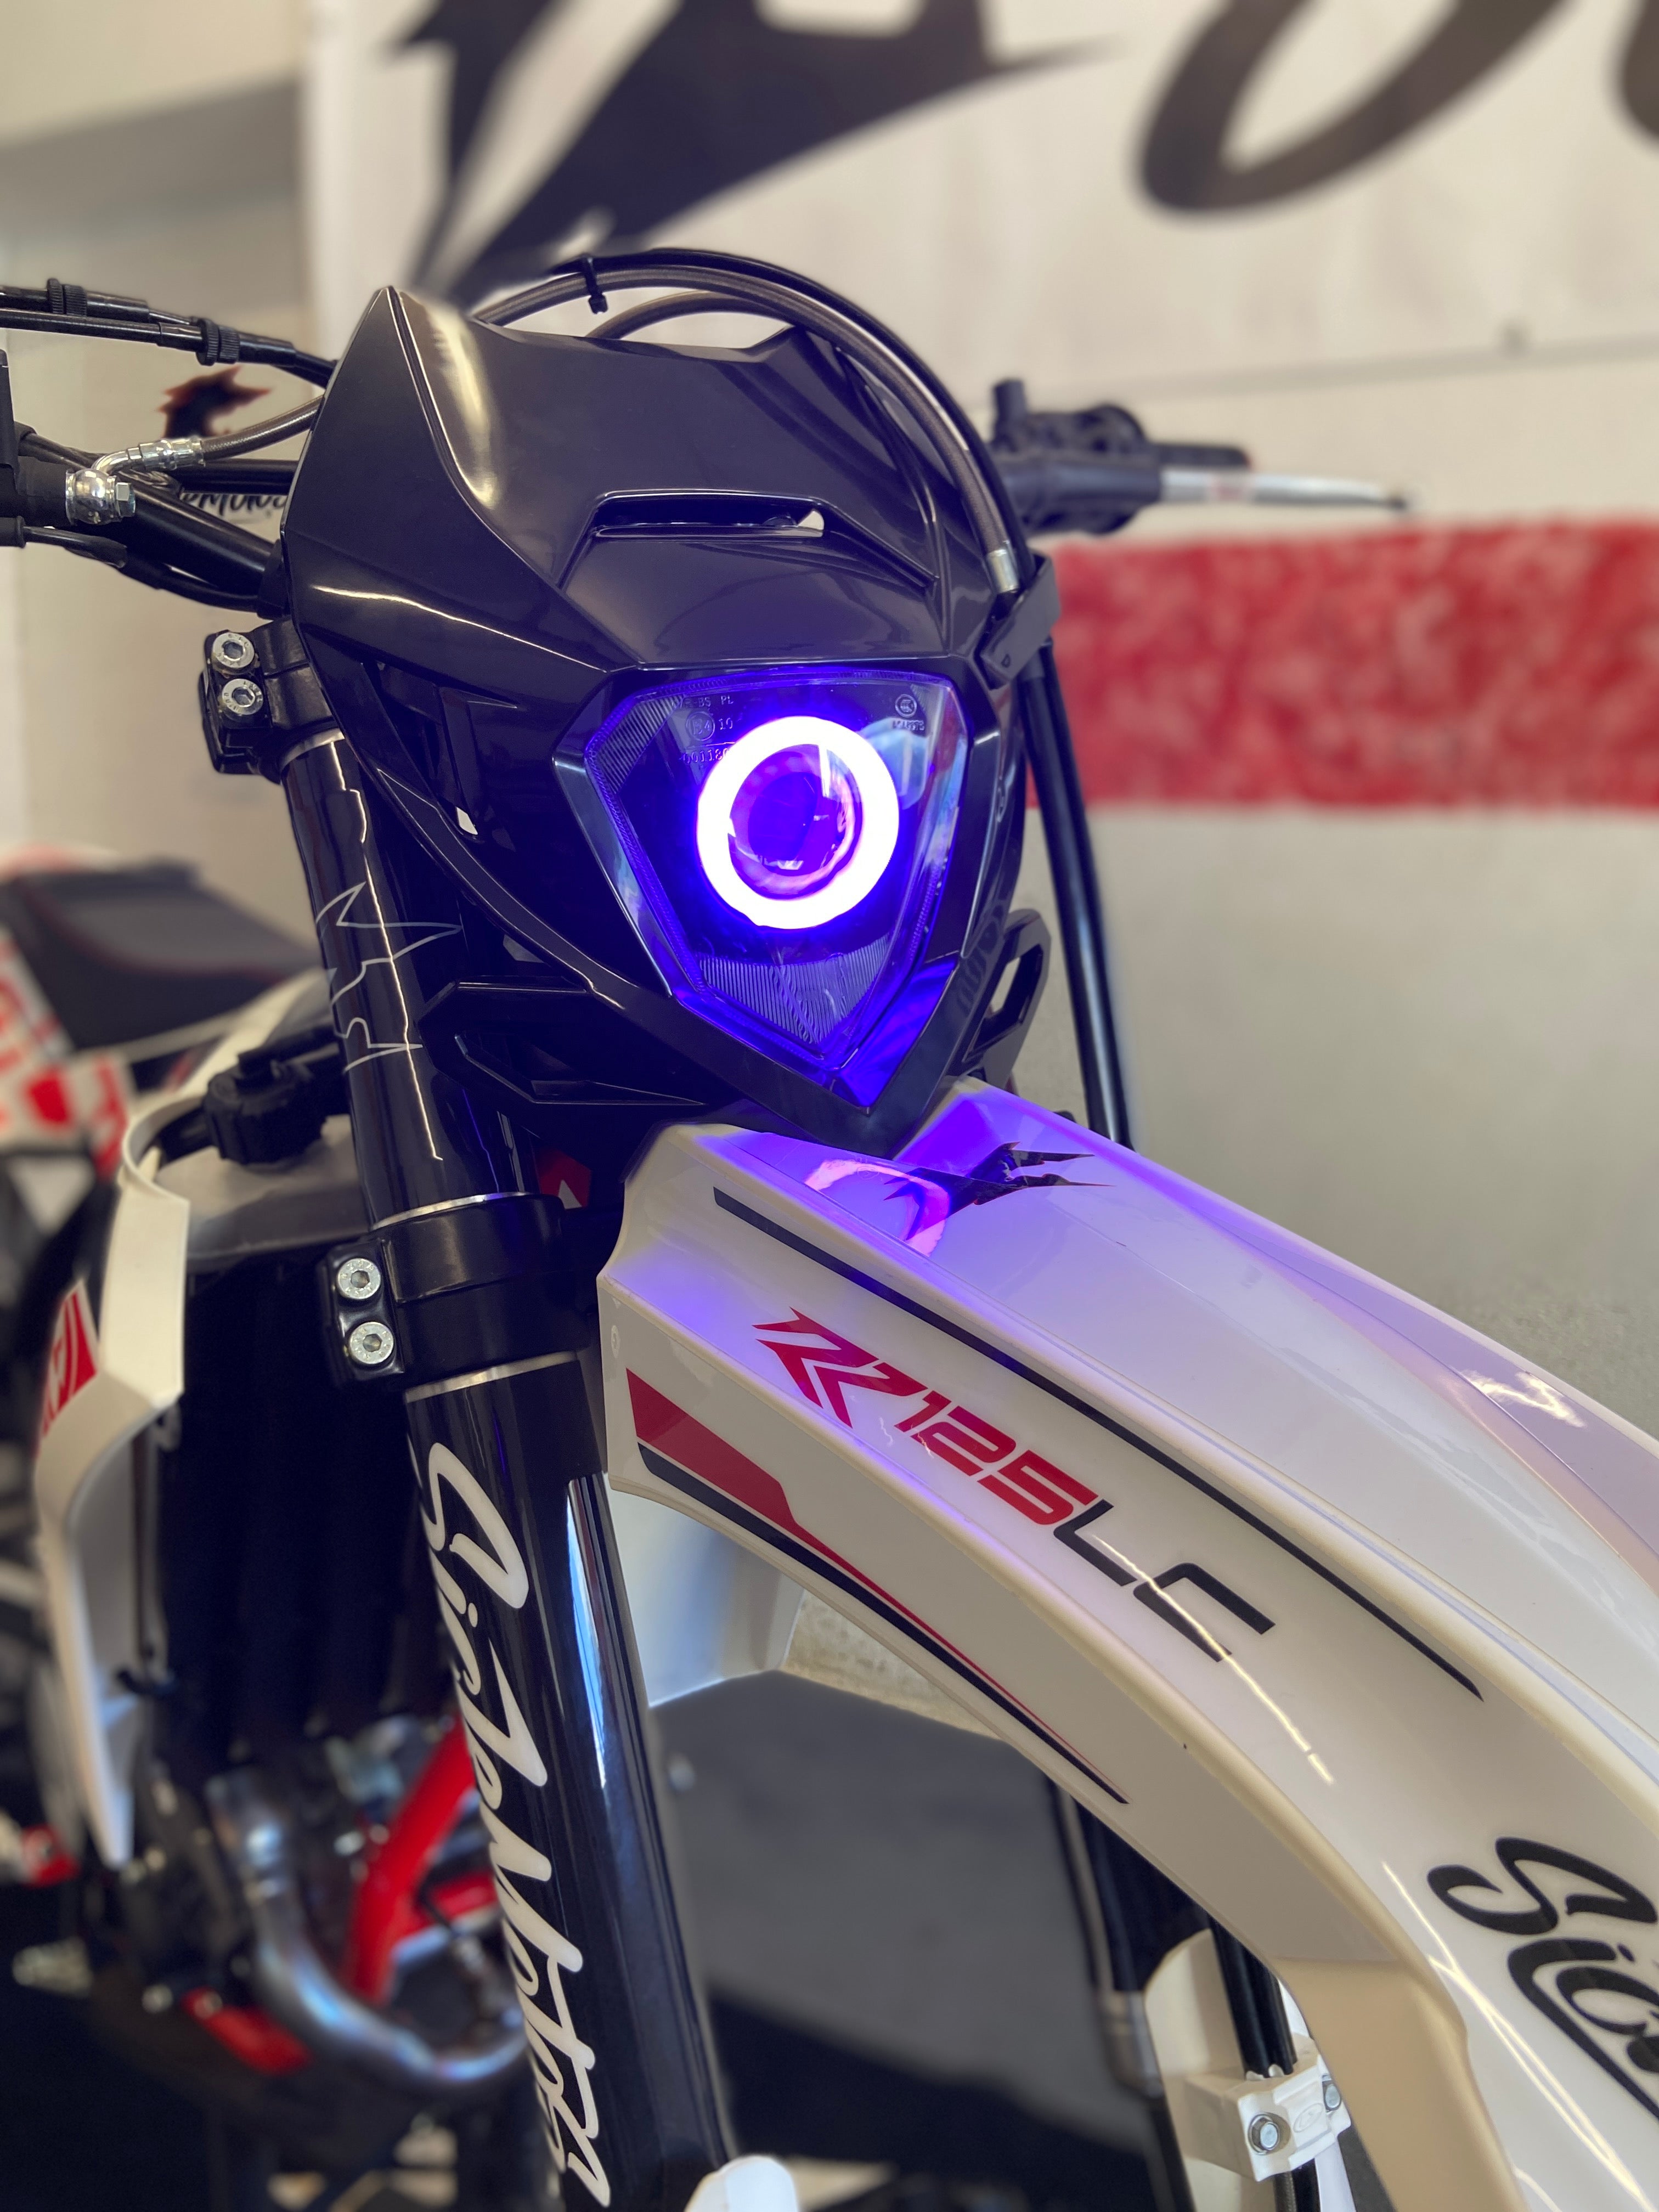 REALOVE Motorrad Scheinwerfer E-Prüfzeichen LED Scheinwerfer